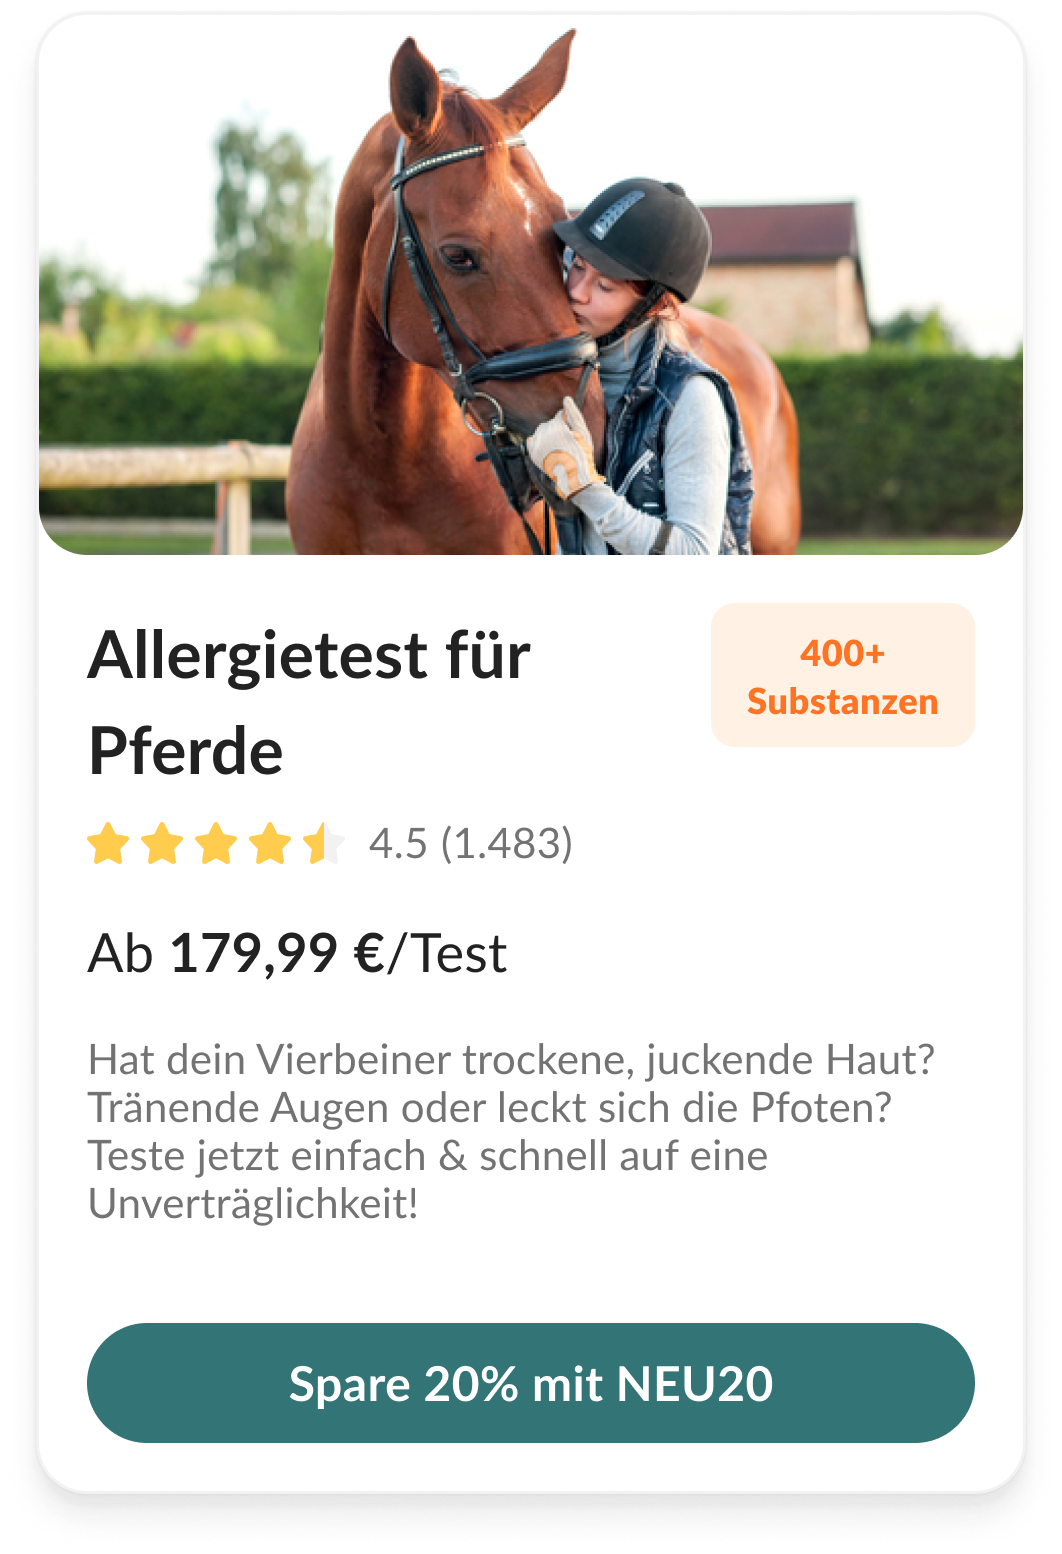 Allergietest für Pferde